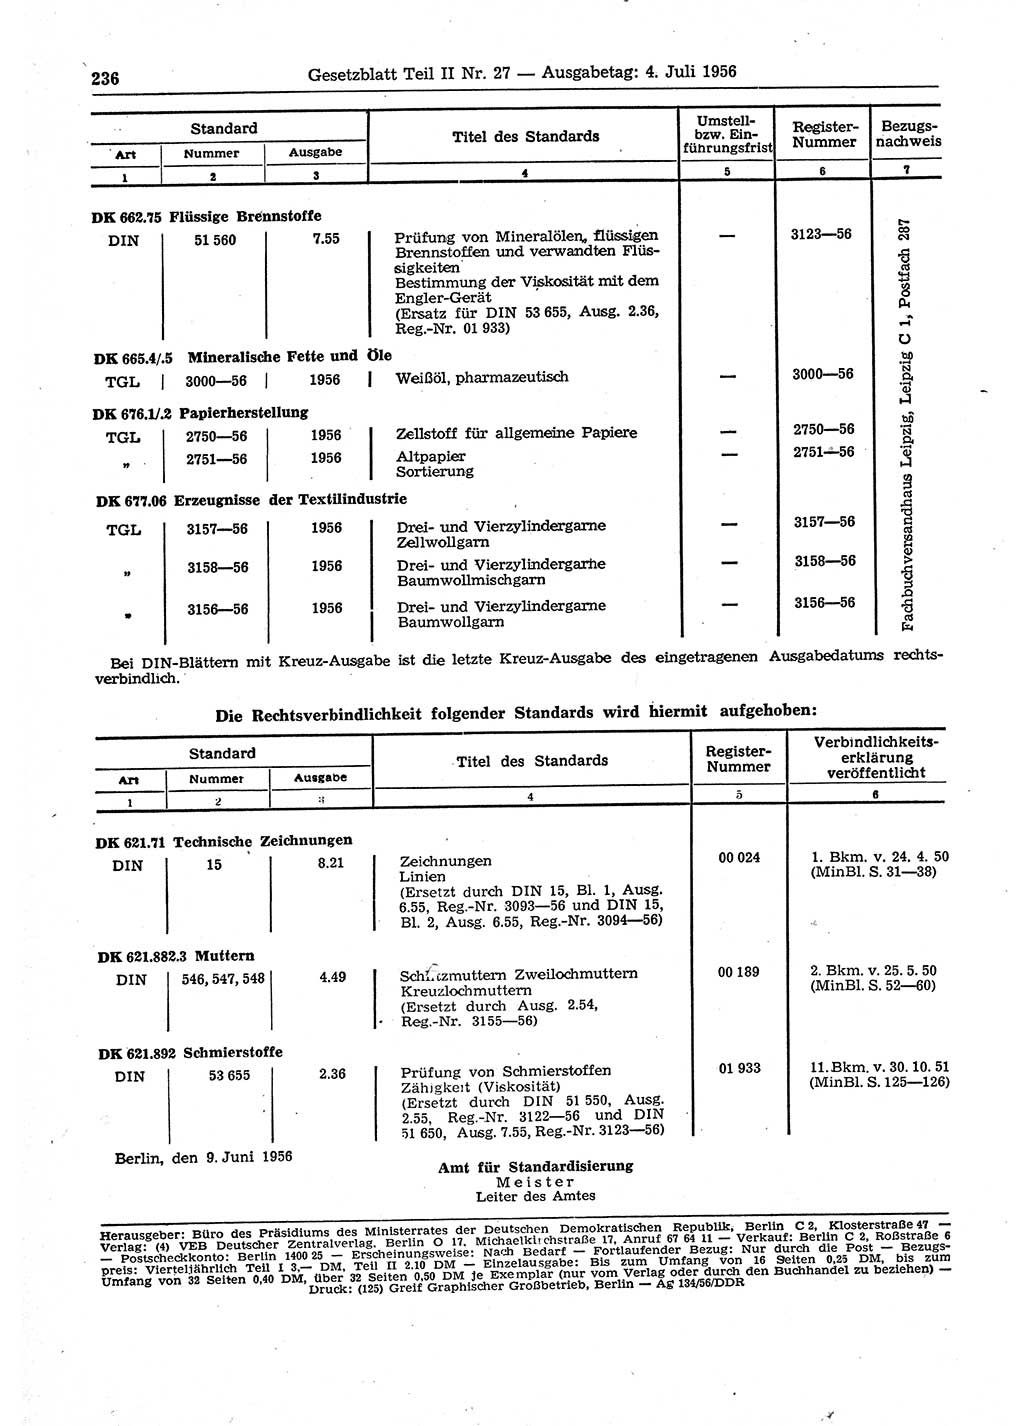 Gesetzblatt (GBl.) der Deutschen Demokratischen Republik (DDR) Teil ⅠⅠ 1956, Seite 236 (GBl. DDR ⅠⅠ 1956, S. 236)